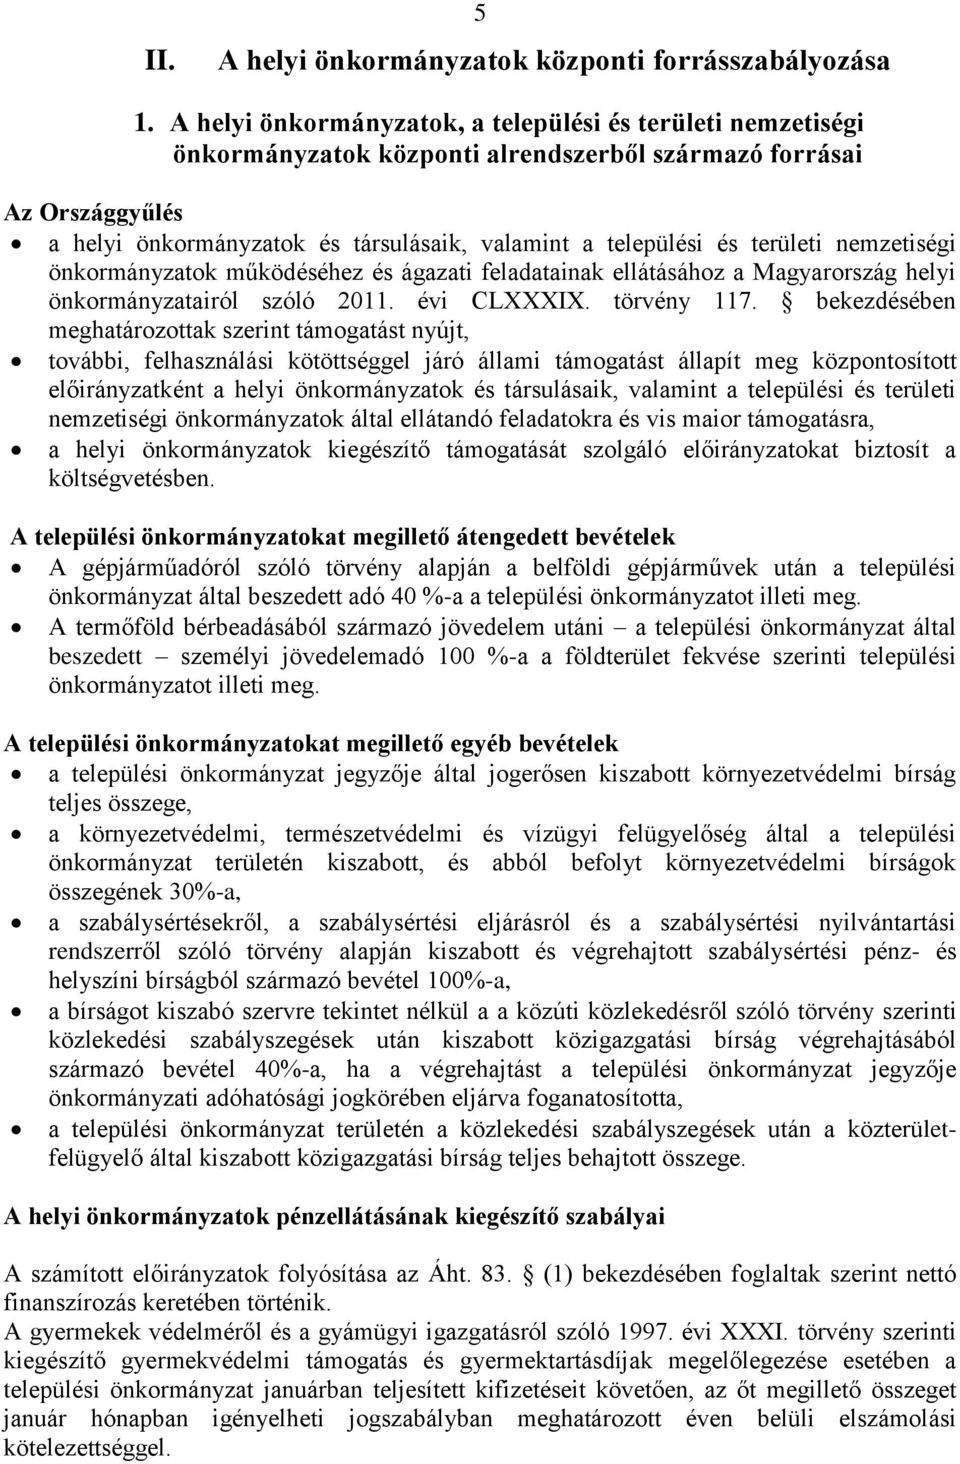 területi nemzetiségi önkormányzatok működéséhez és ágazati feladatainak ellátásához a Magyarország helyi önkormányzatairól szóló 2011. évi CLXXXIX. törvény 117.